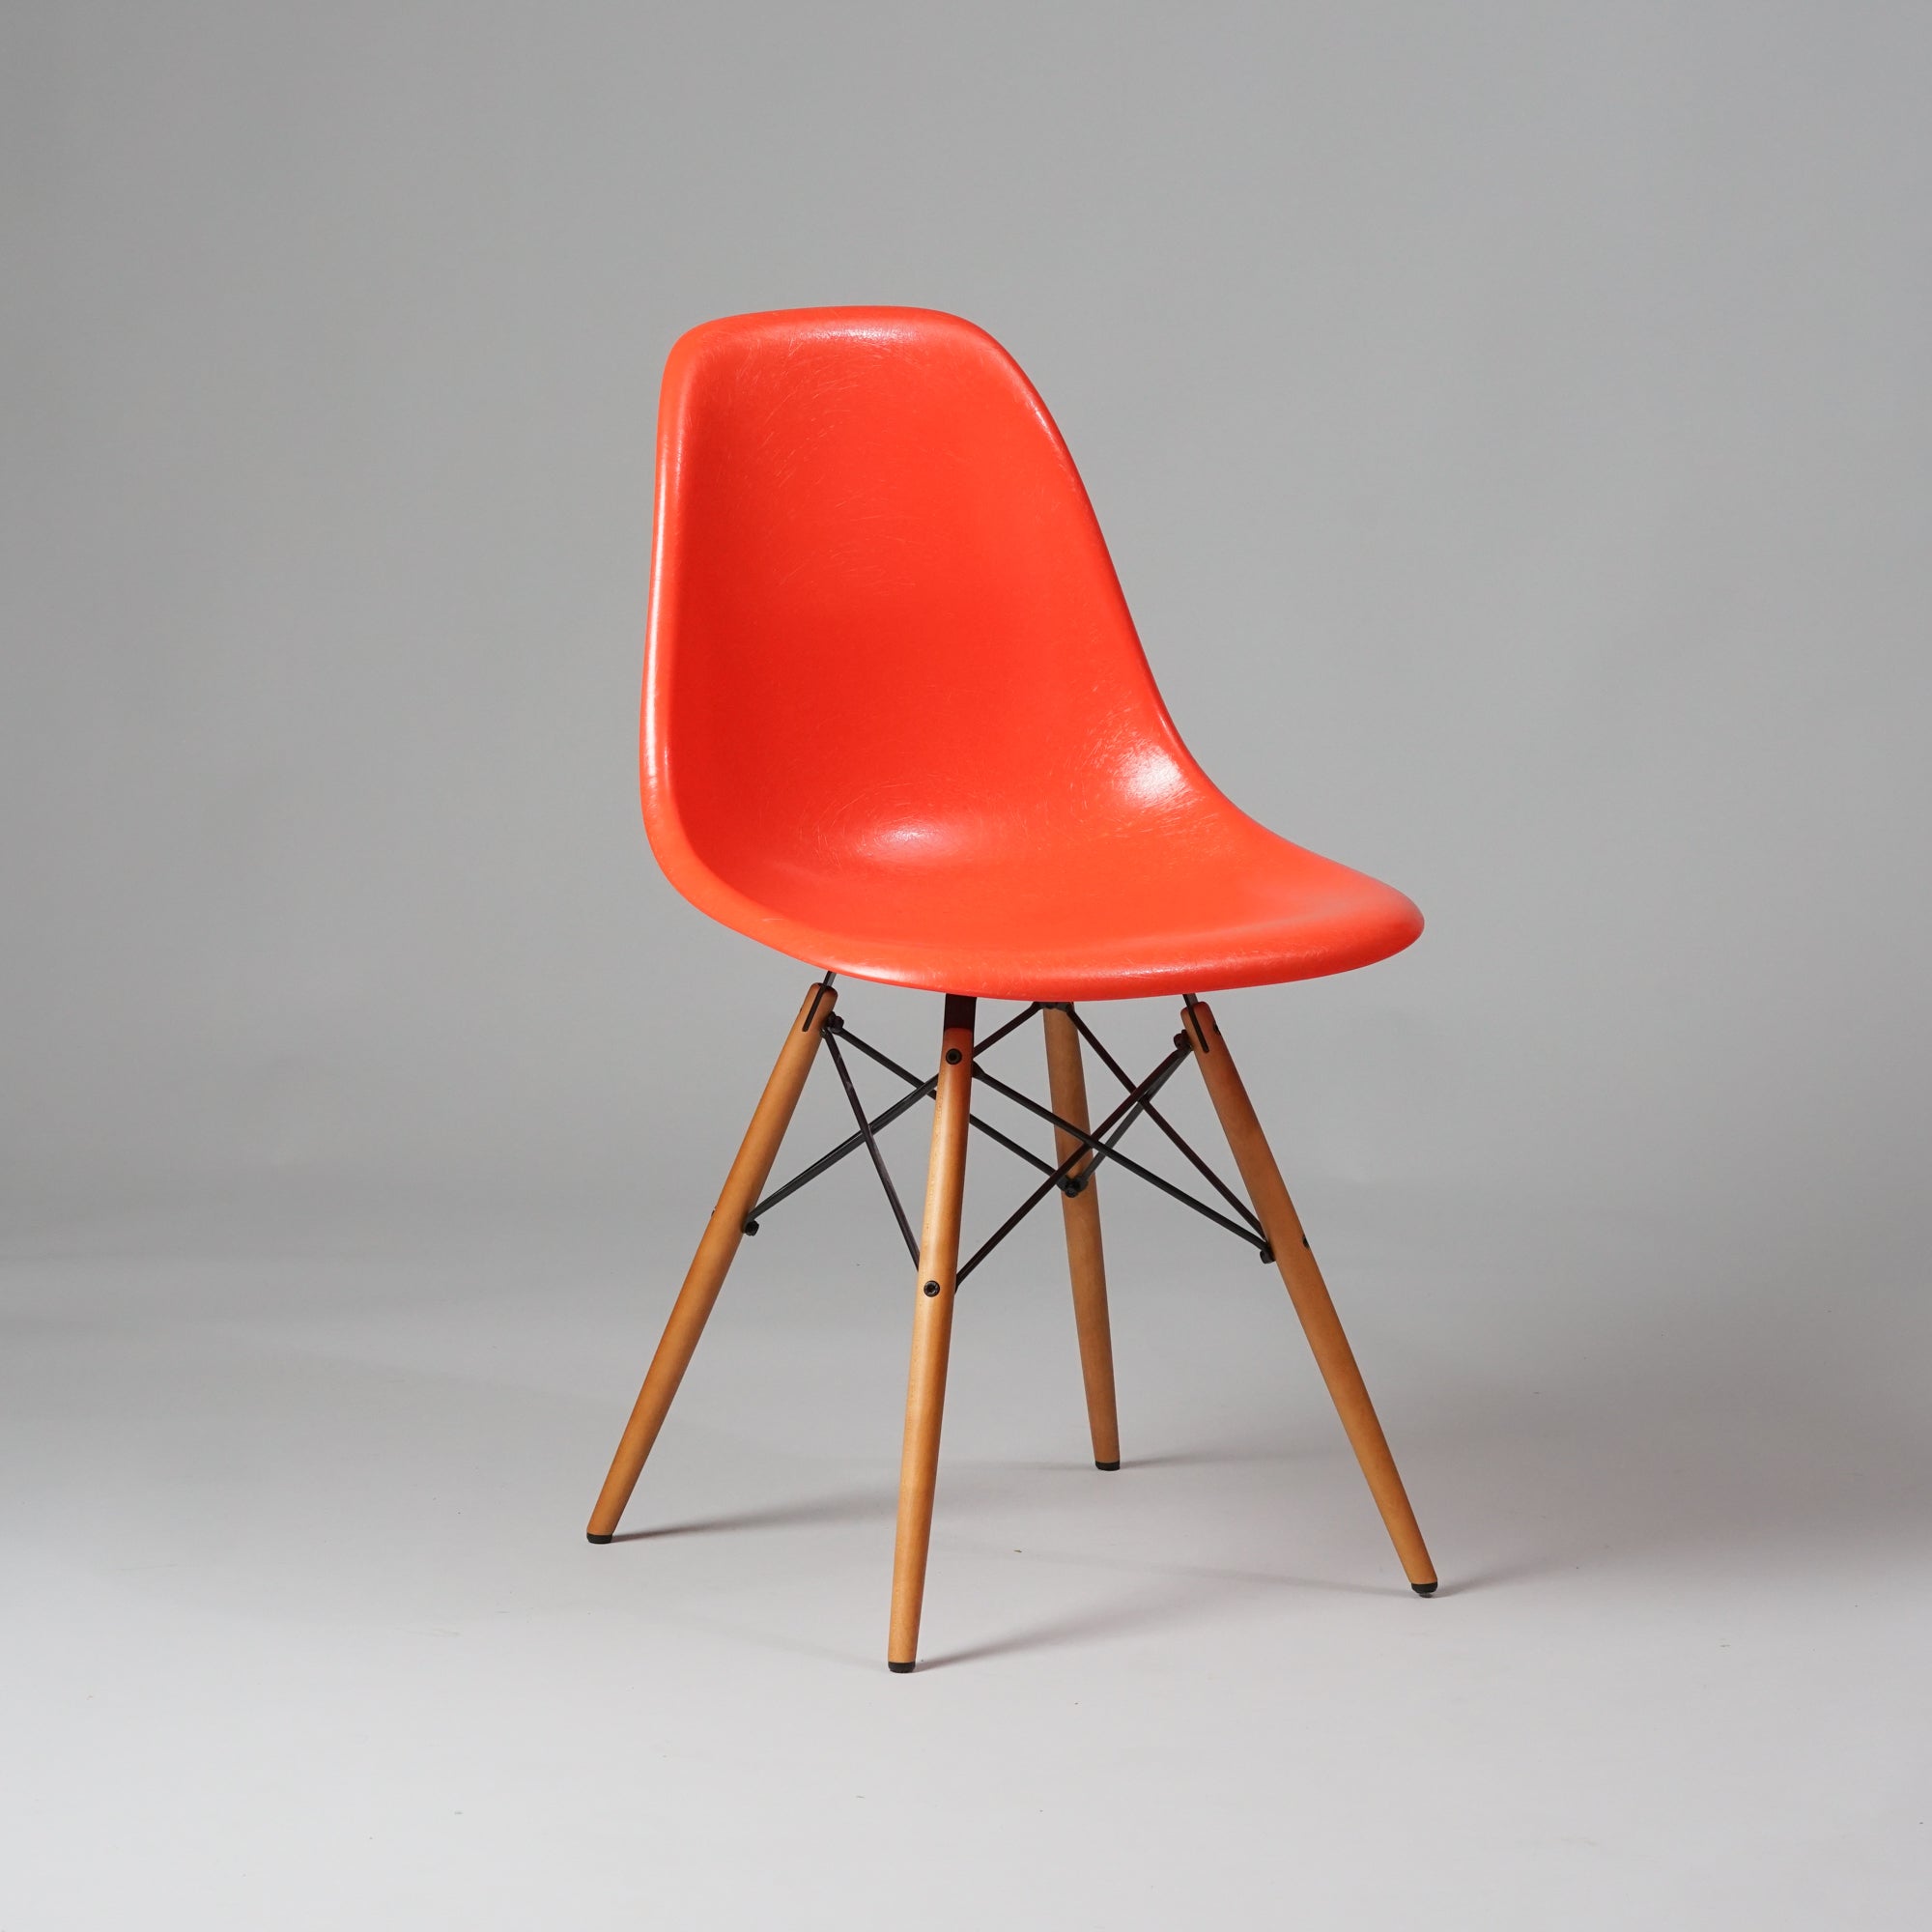 Tuoli, jonka jalat ovat vaahteraa ja jalkojen välissä olevat tangot metallia. Punertava oranssi istuinosa on lasikuitua.